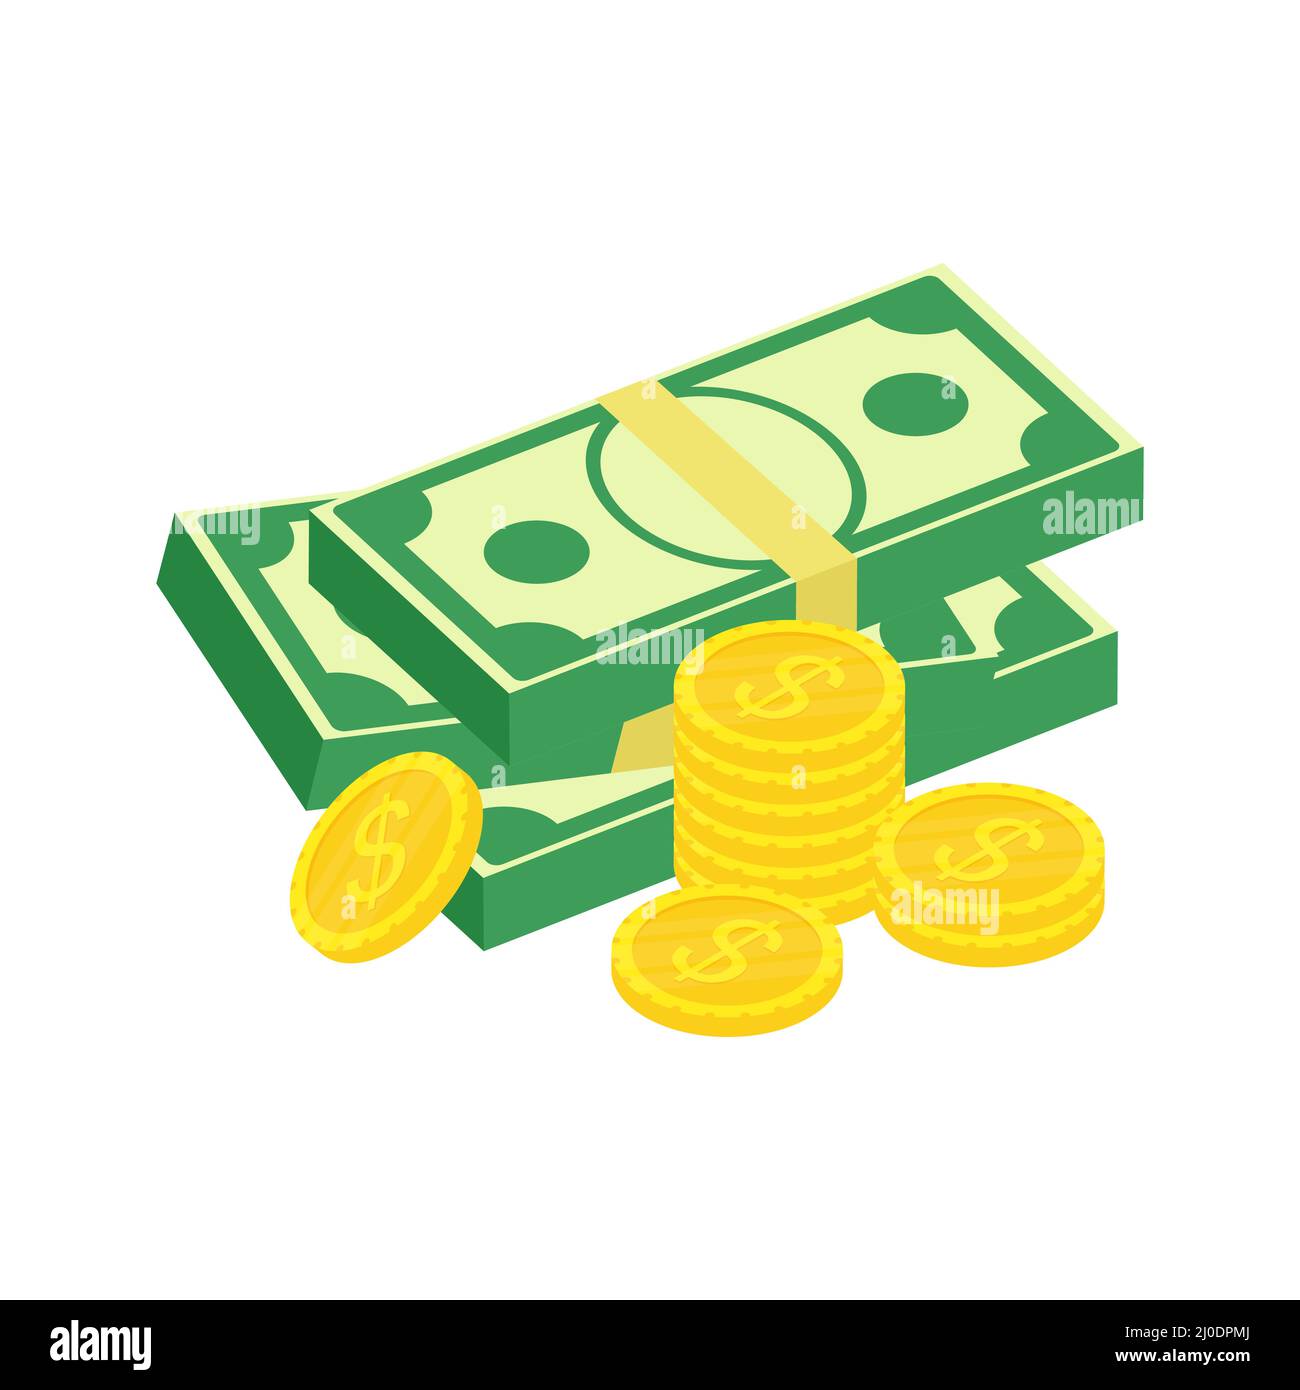 Isometrische Dollar-Pakete und goldene Stapel Münzen gesetzt. Konzept Wirtschaft, Finanzen, Geld. Stock Vektor